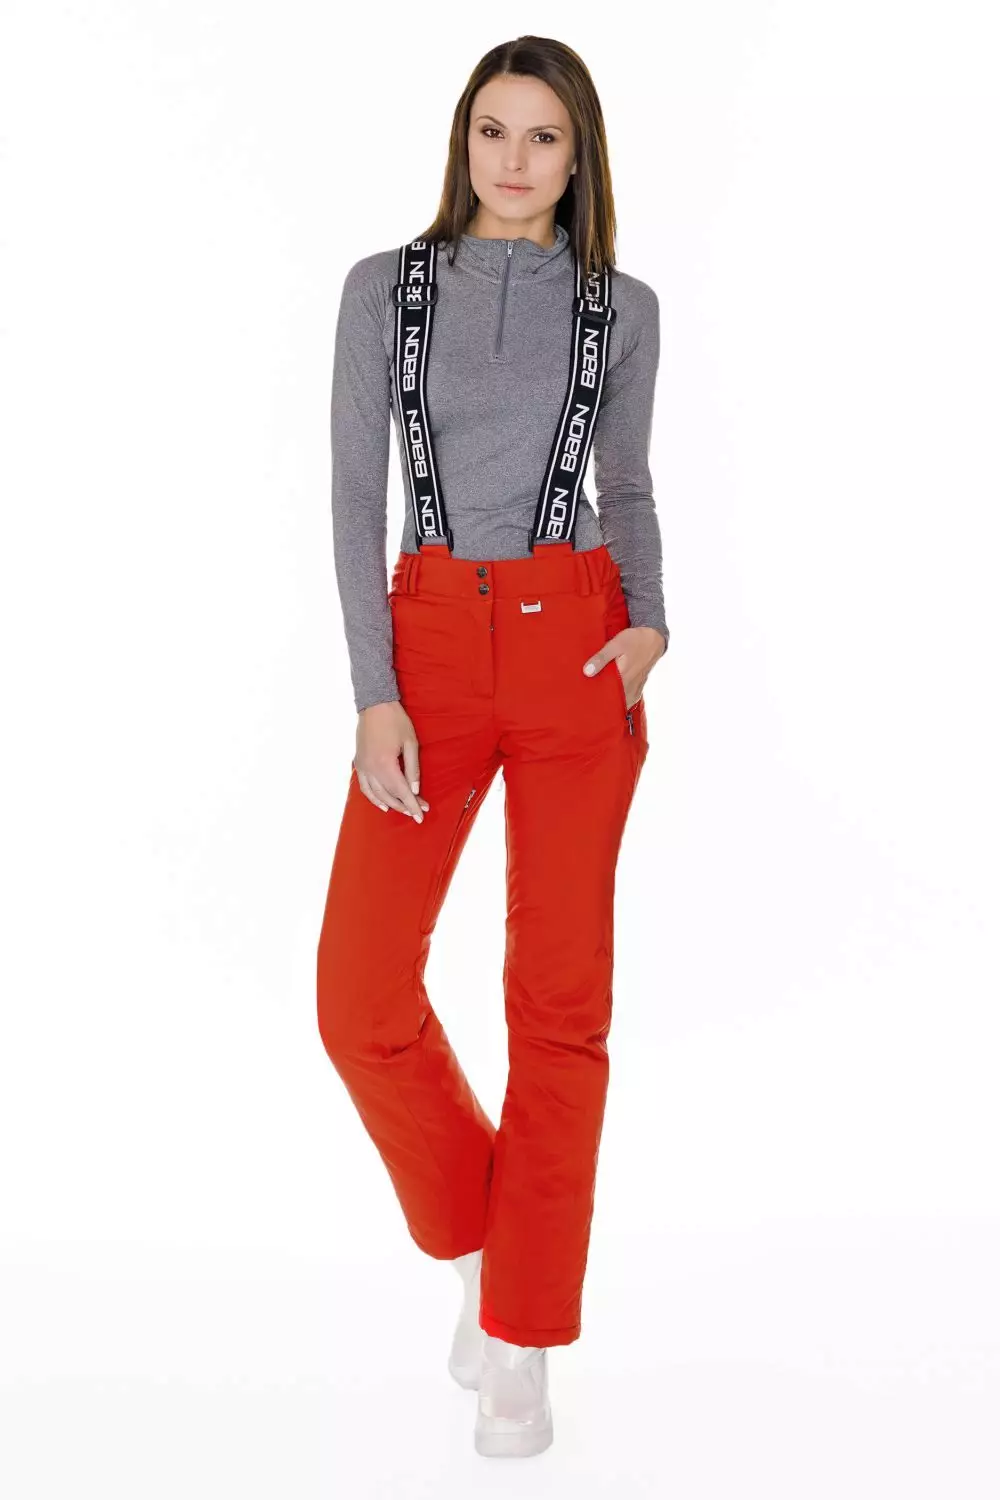 Modne hlače 2021: Ženski moderni modeli, modni trendovi 917_302